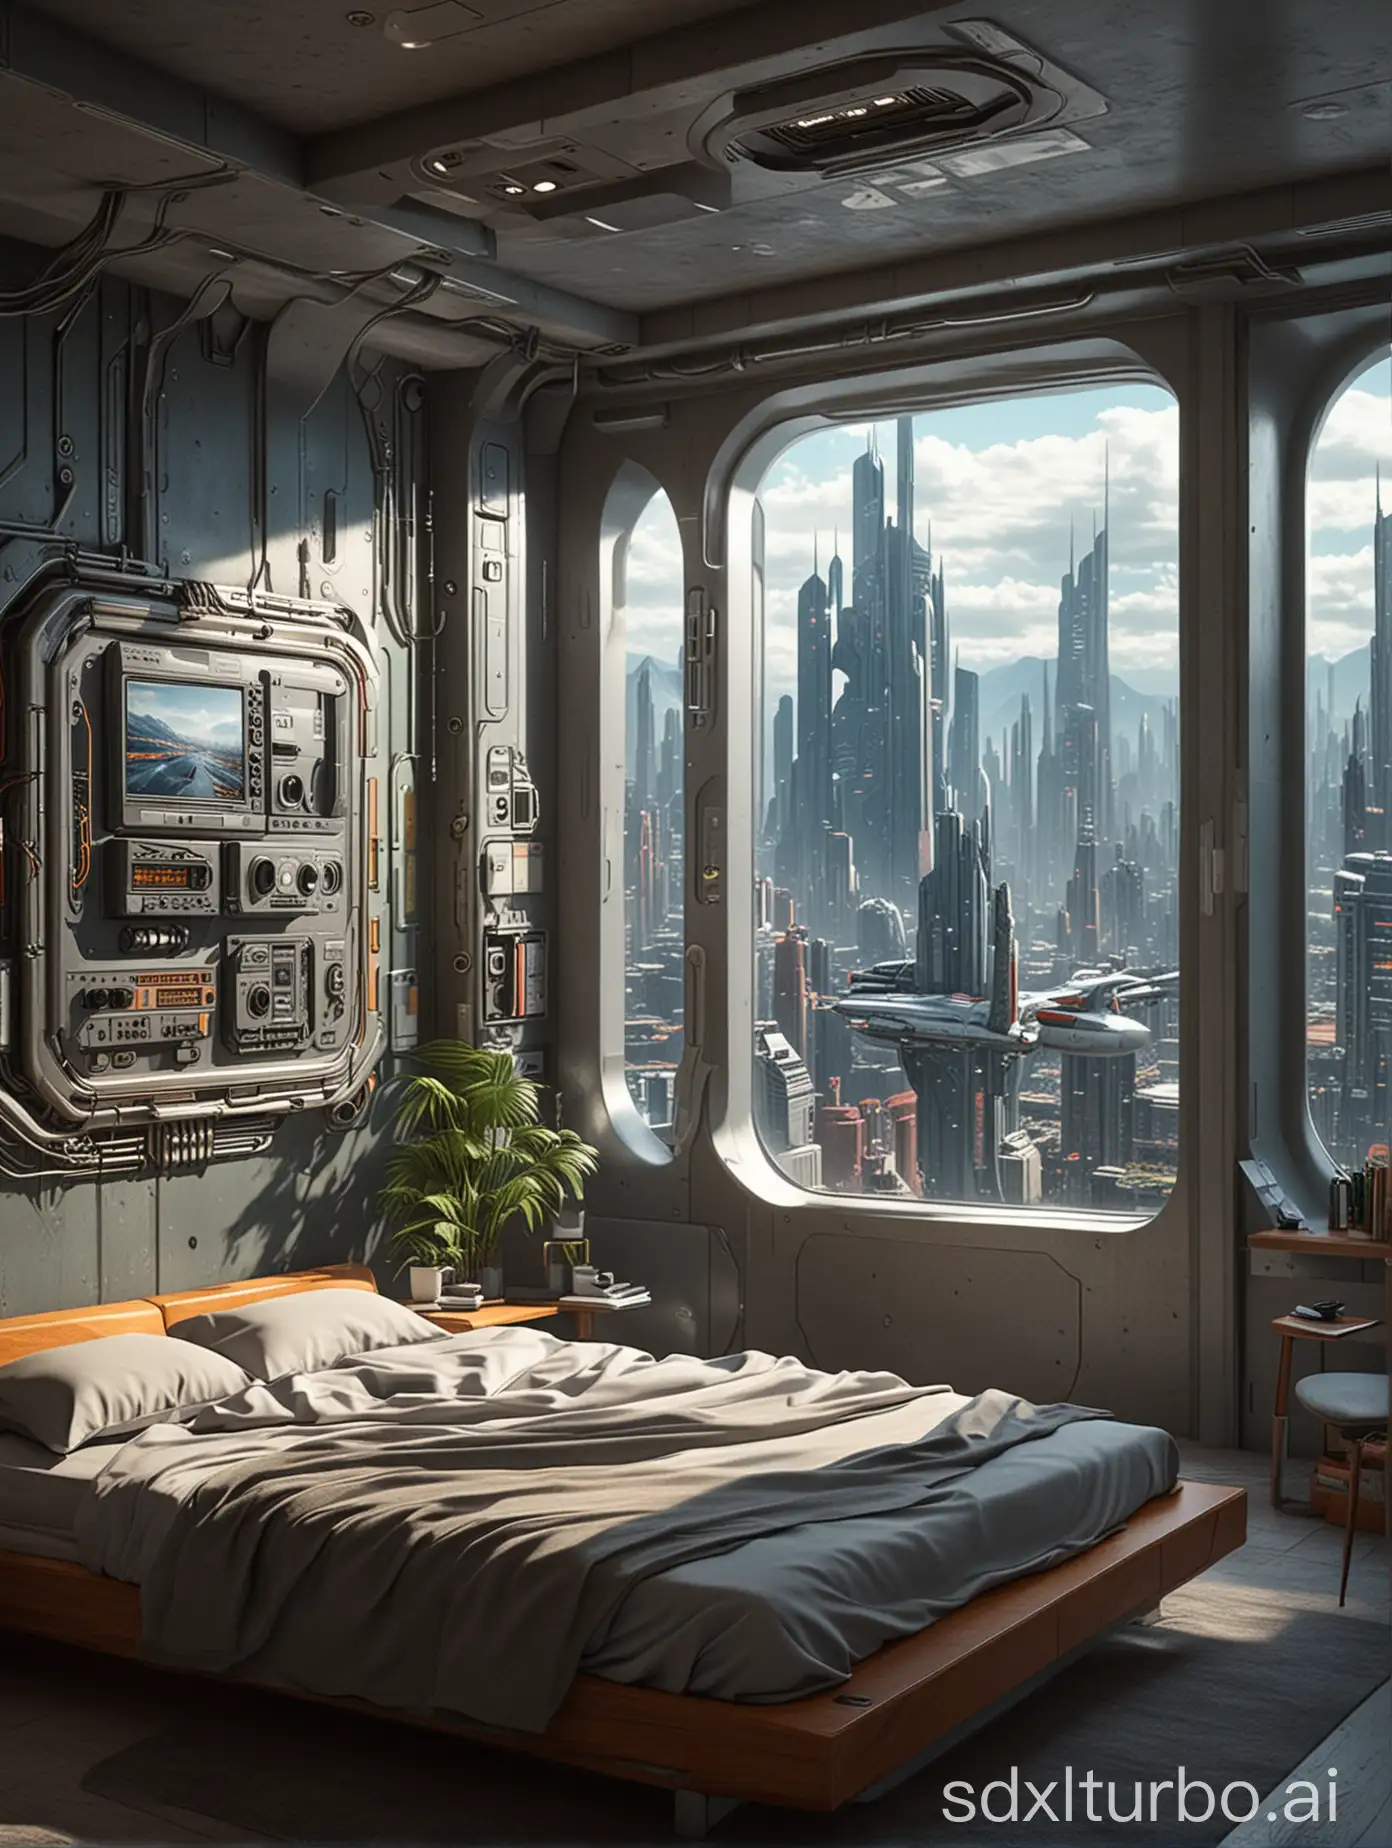 Futuristic-SciFi-City-Bedroom-View